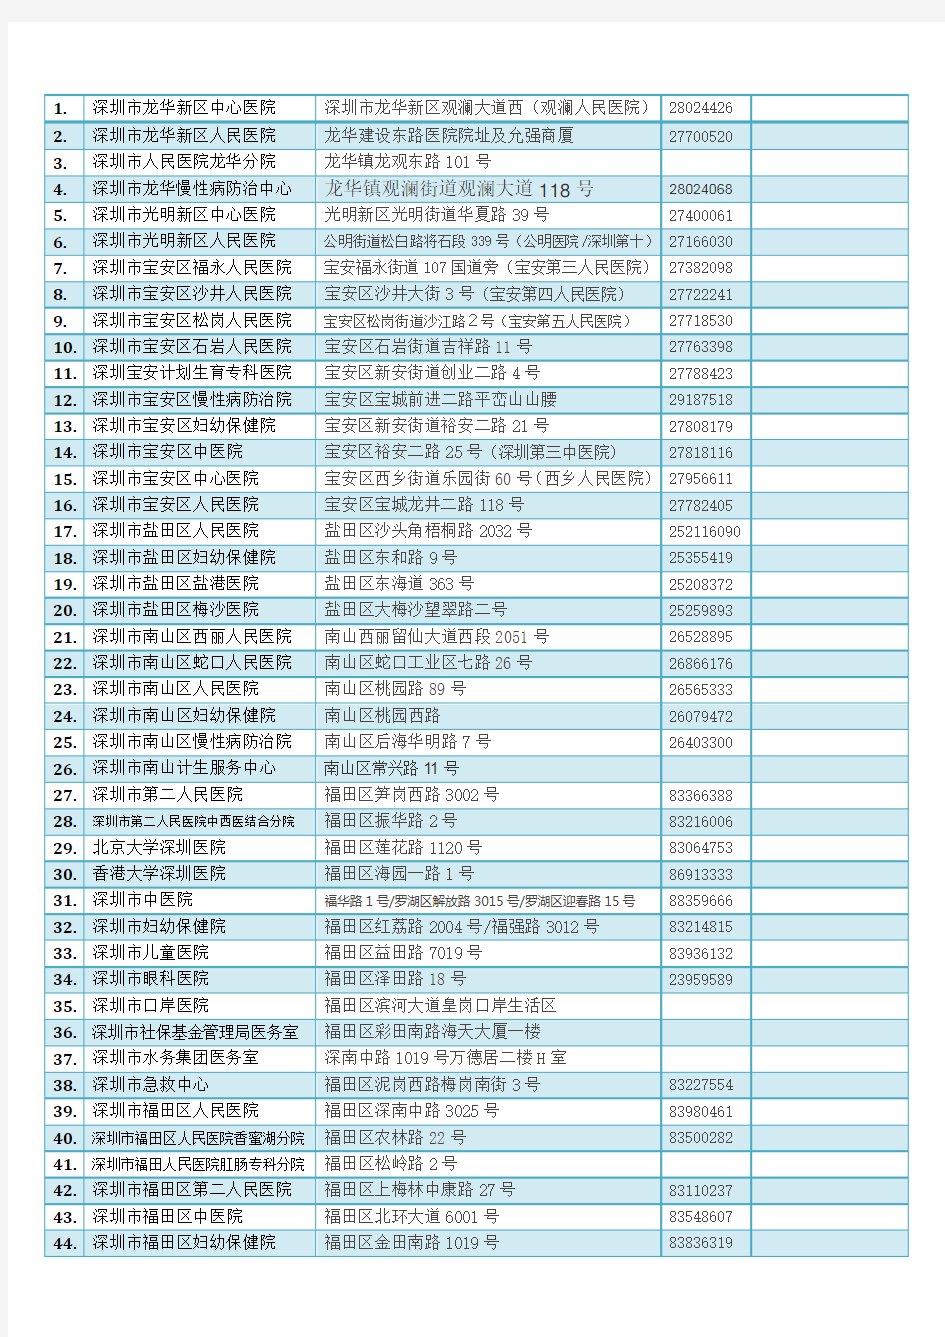 深圳公立医院名单(整理)